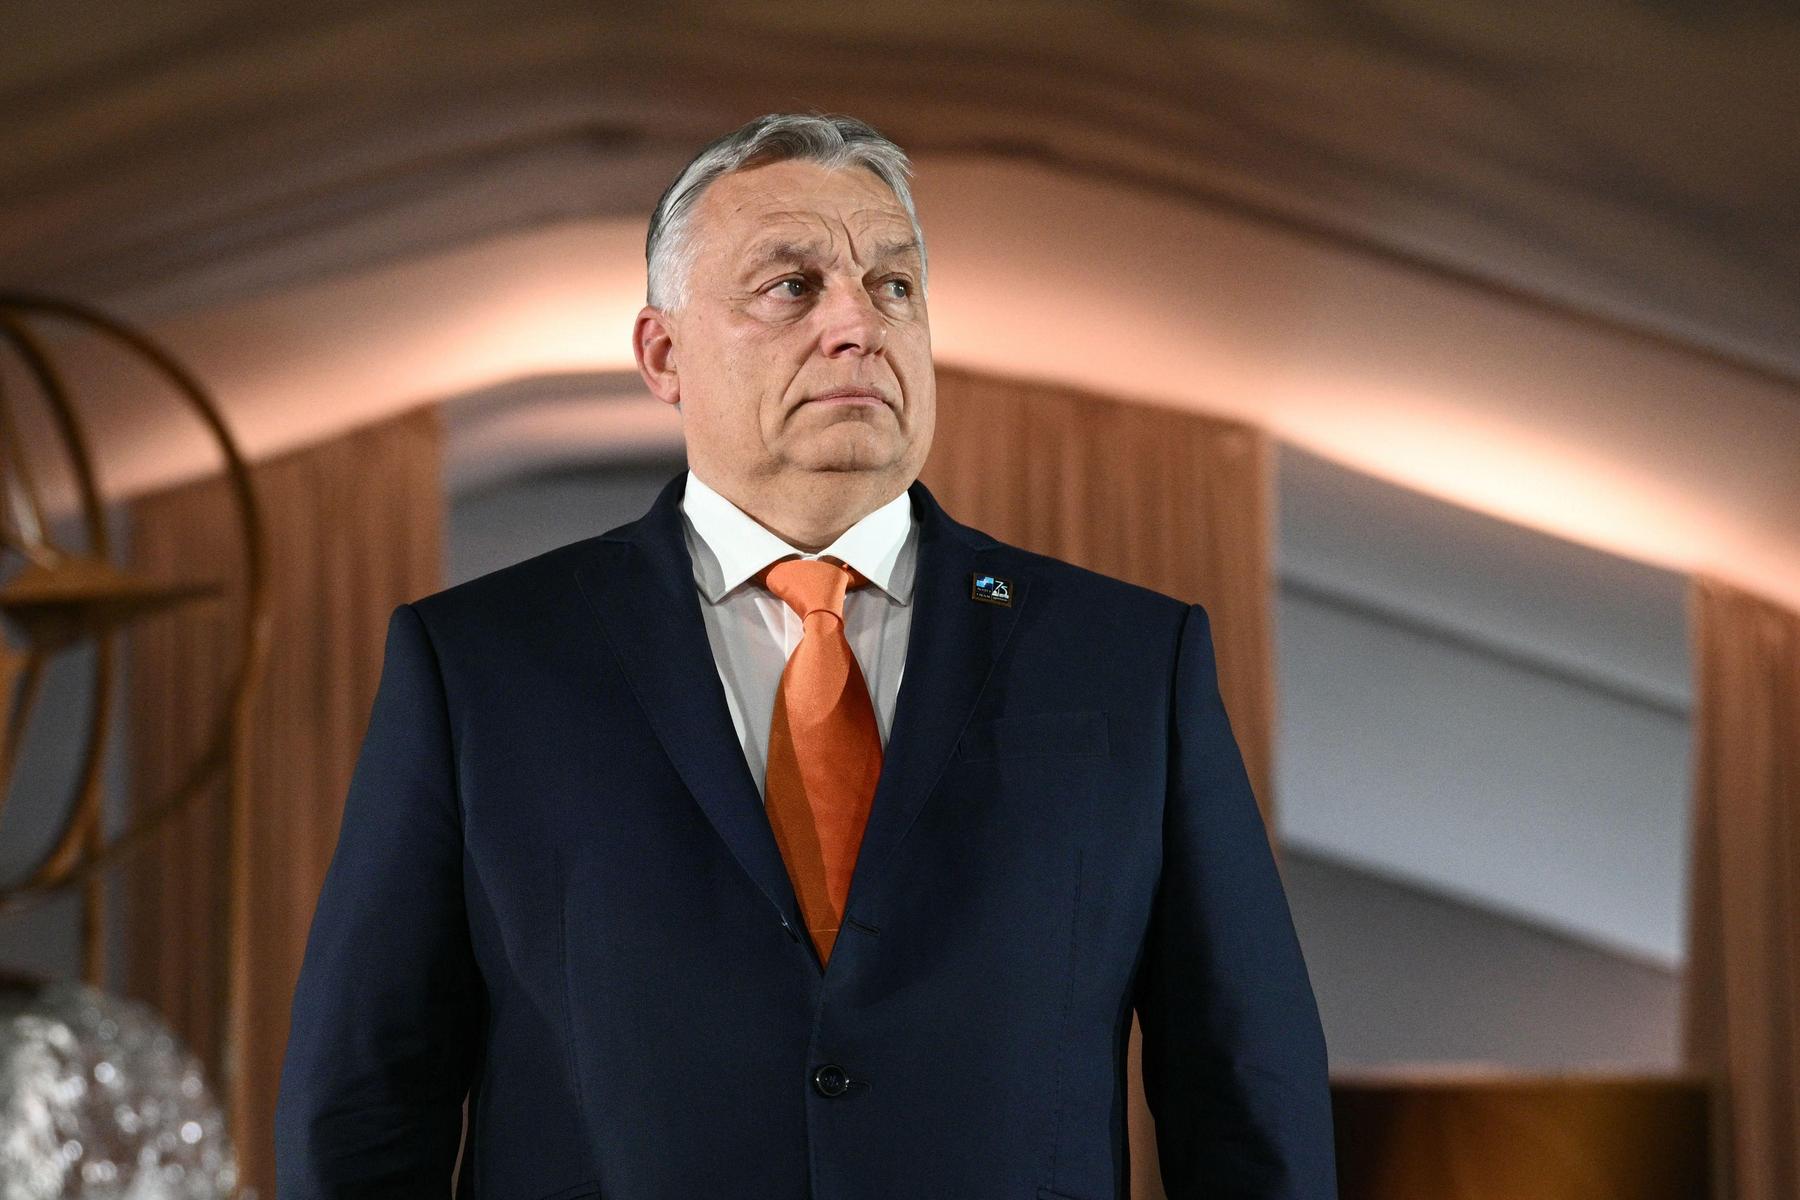 Nach Putin und Xi Treffen mit Trump?: Viktor Orbán, Ungarns Polit-Satellit auf Kollisionskurs 